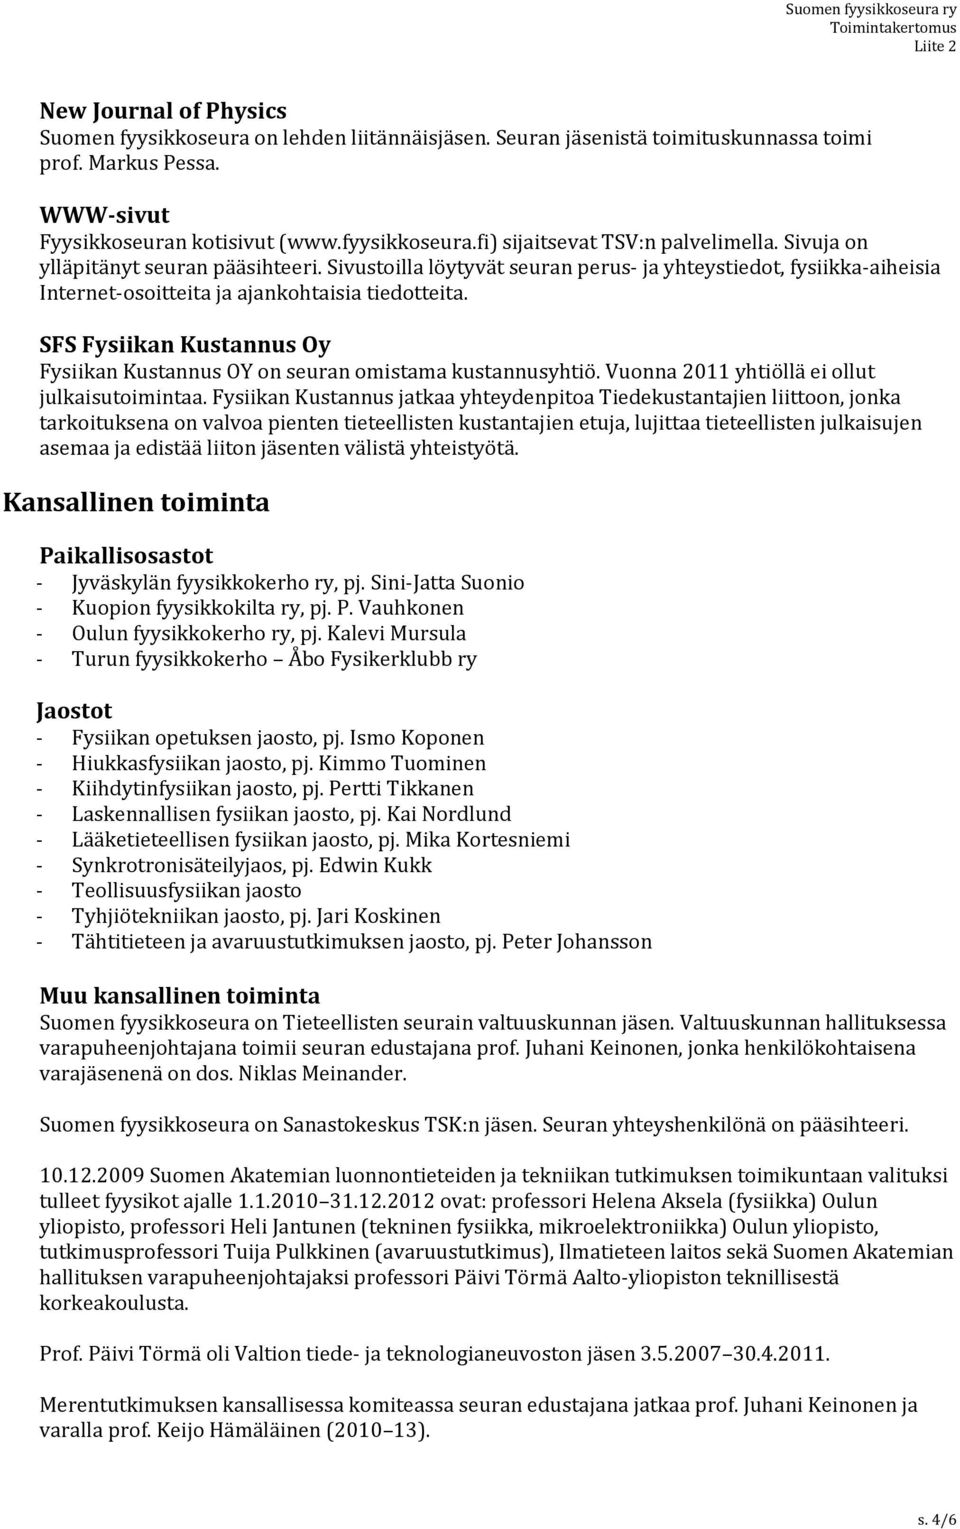 SFS Fysiikan Kustannus Oy Fysiikan Kustannus OY on seuran omistama kustannusyhtiö. Vuonna 2011 yhtiöllä ei ollut julkaisutoimintaa.